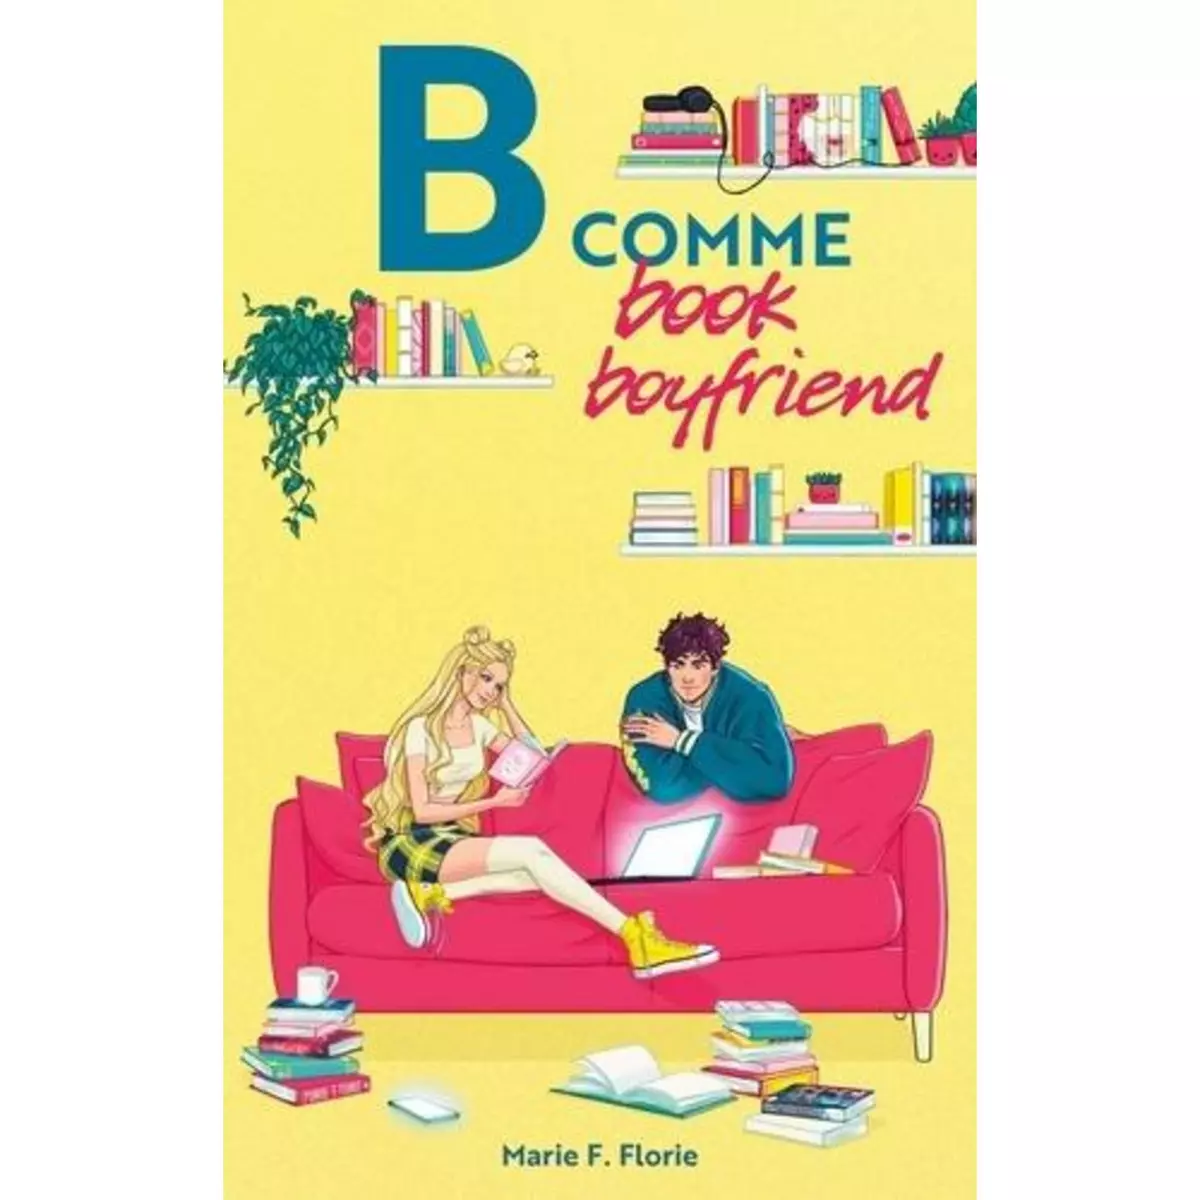  B COMME BOOK BOYFRIEND, Florie Marie F.